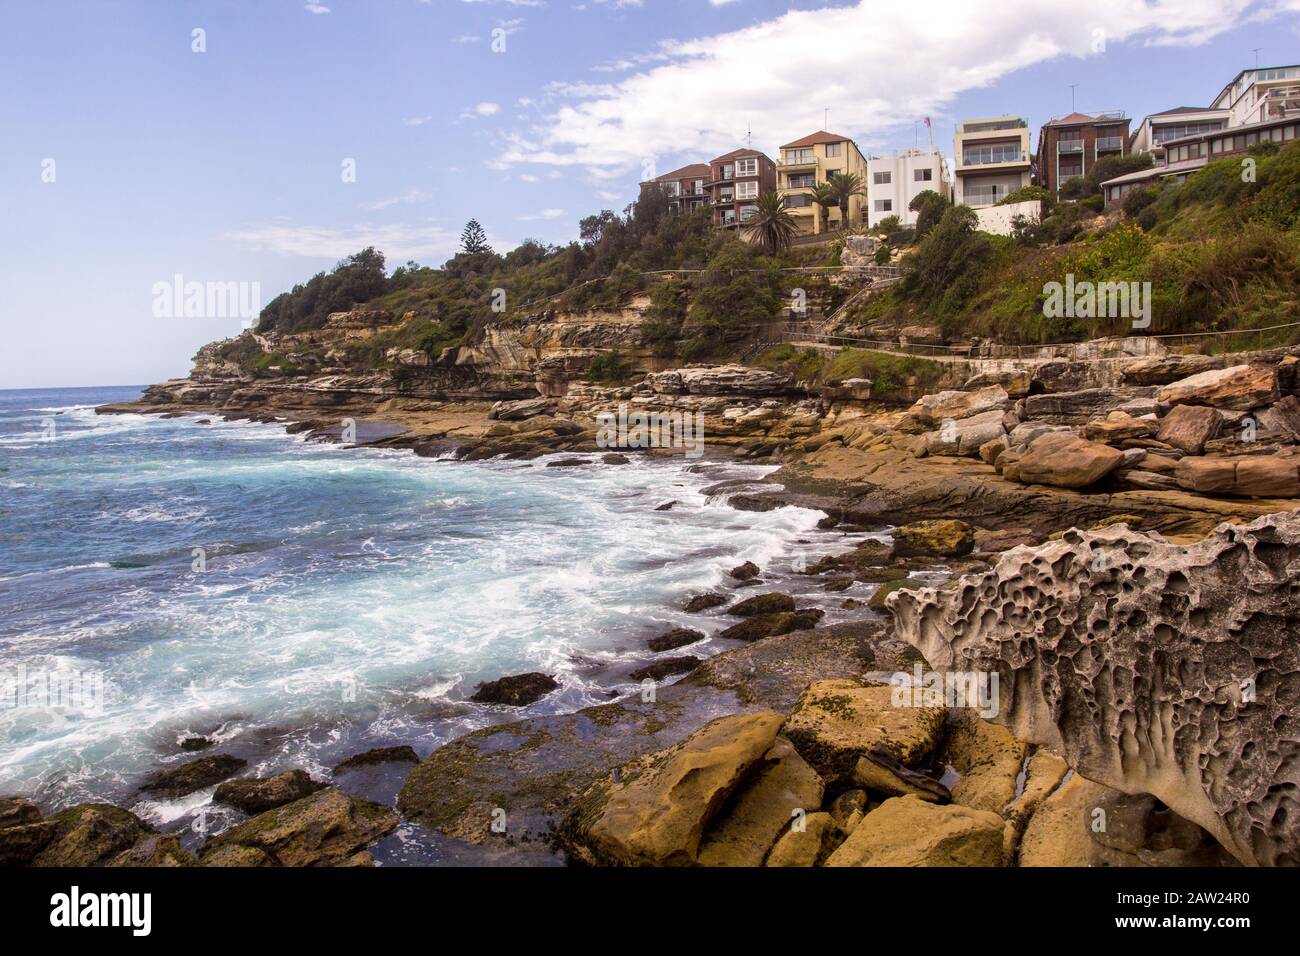 Bondi to Coogee Coastal walk, Sydney, Australia Stock Photo